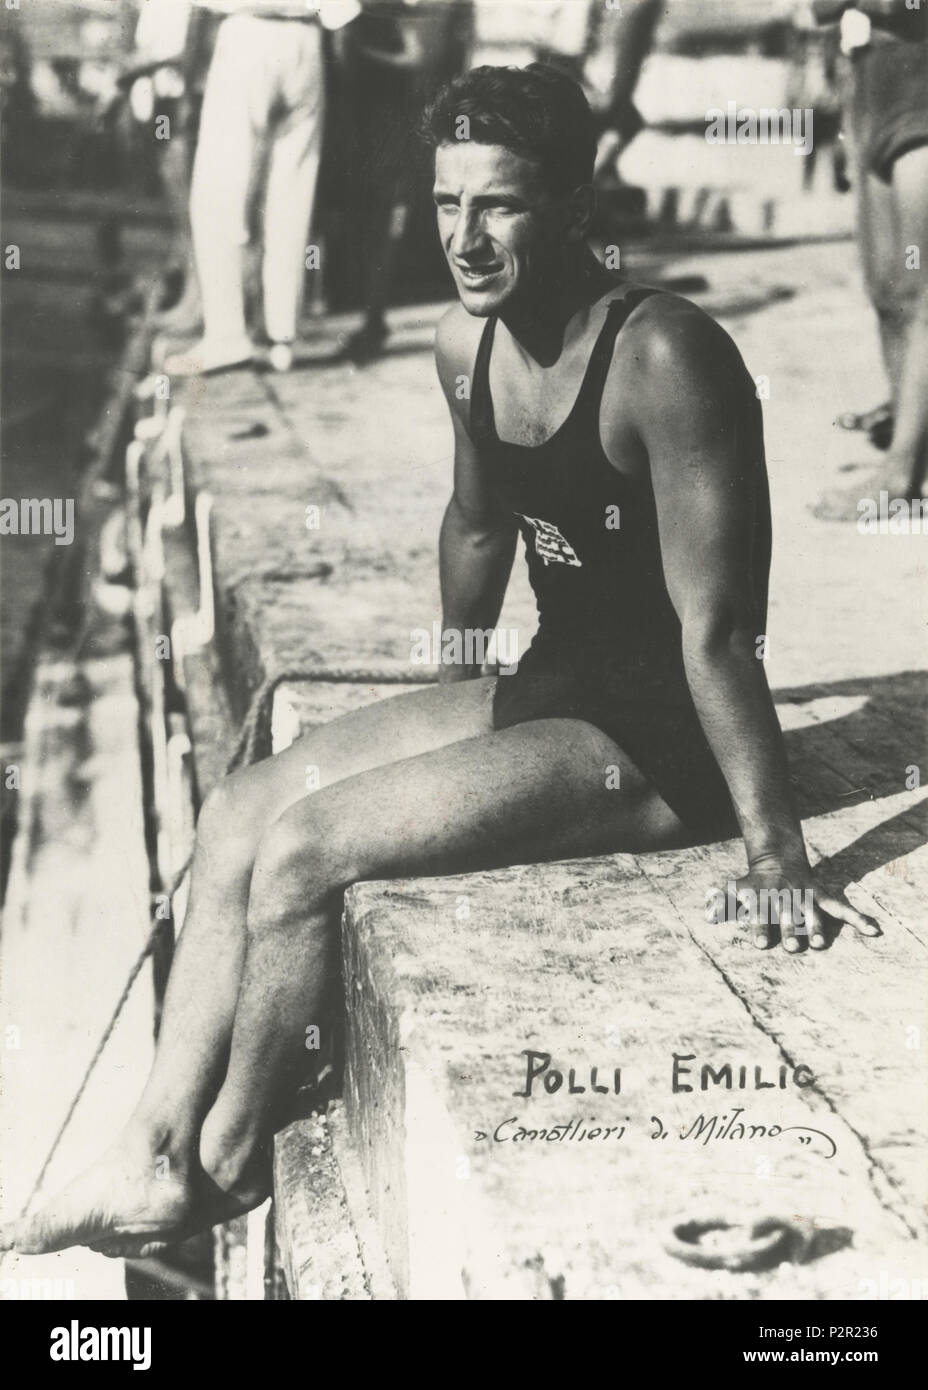 Englisch: Emilio Biotti olympischen Schwimmer italienischer Meister. 1919.  Gino Biotti (gestorben 1926) 25 Emilio Biotti Meister Stockfotografie -  Alamy